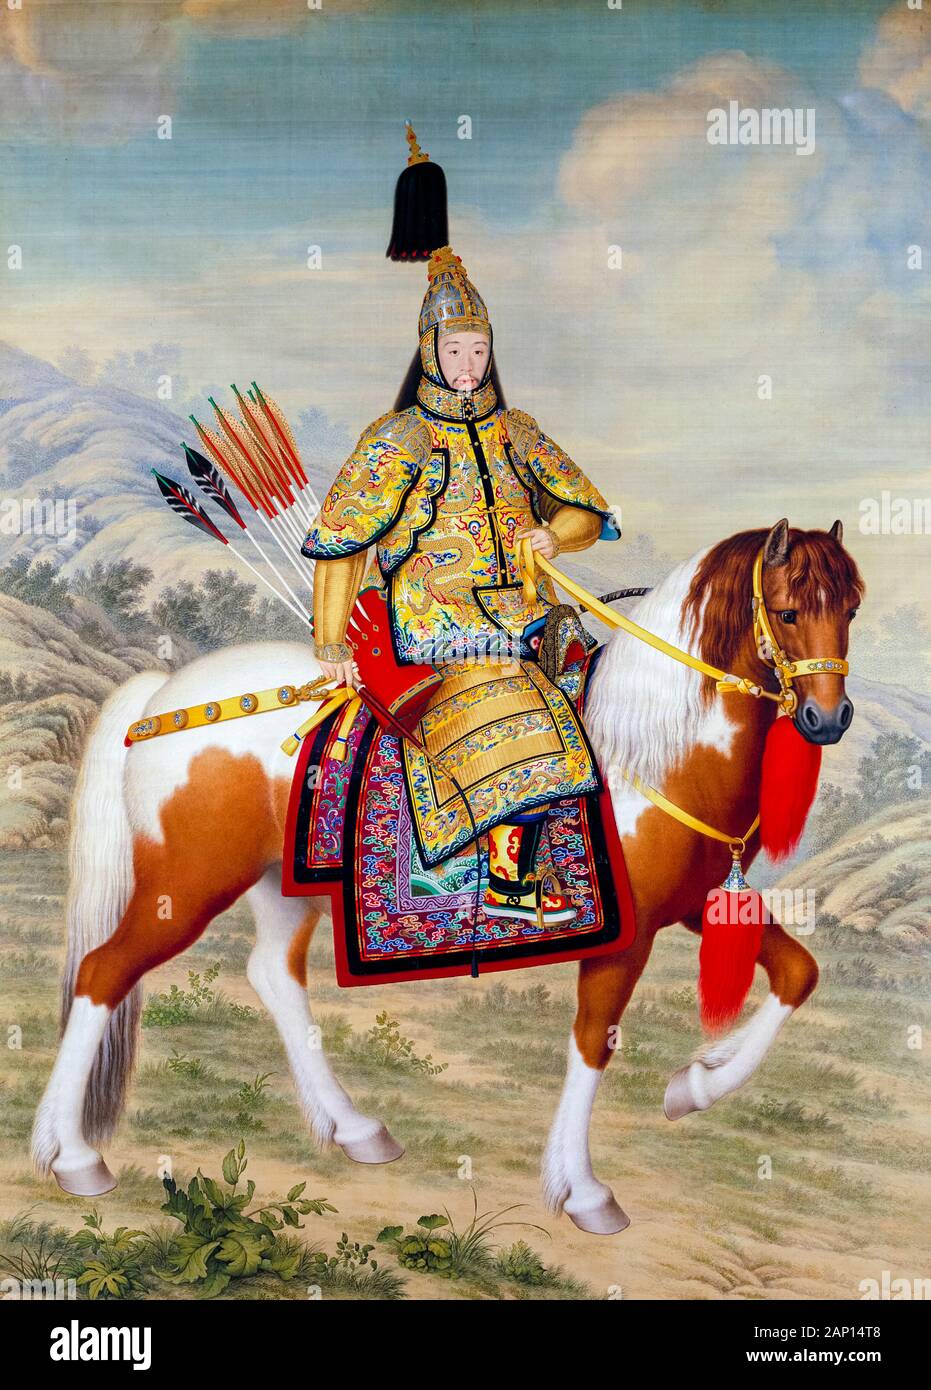 L'empereur Qianlong (1711-1799), portrait équestre dans la peinture sur l'Armure de cérémonie par Giuseppe Castiglione, 1758 Banque D'Images